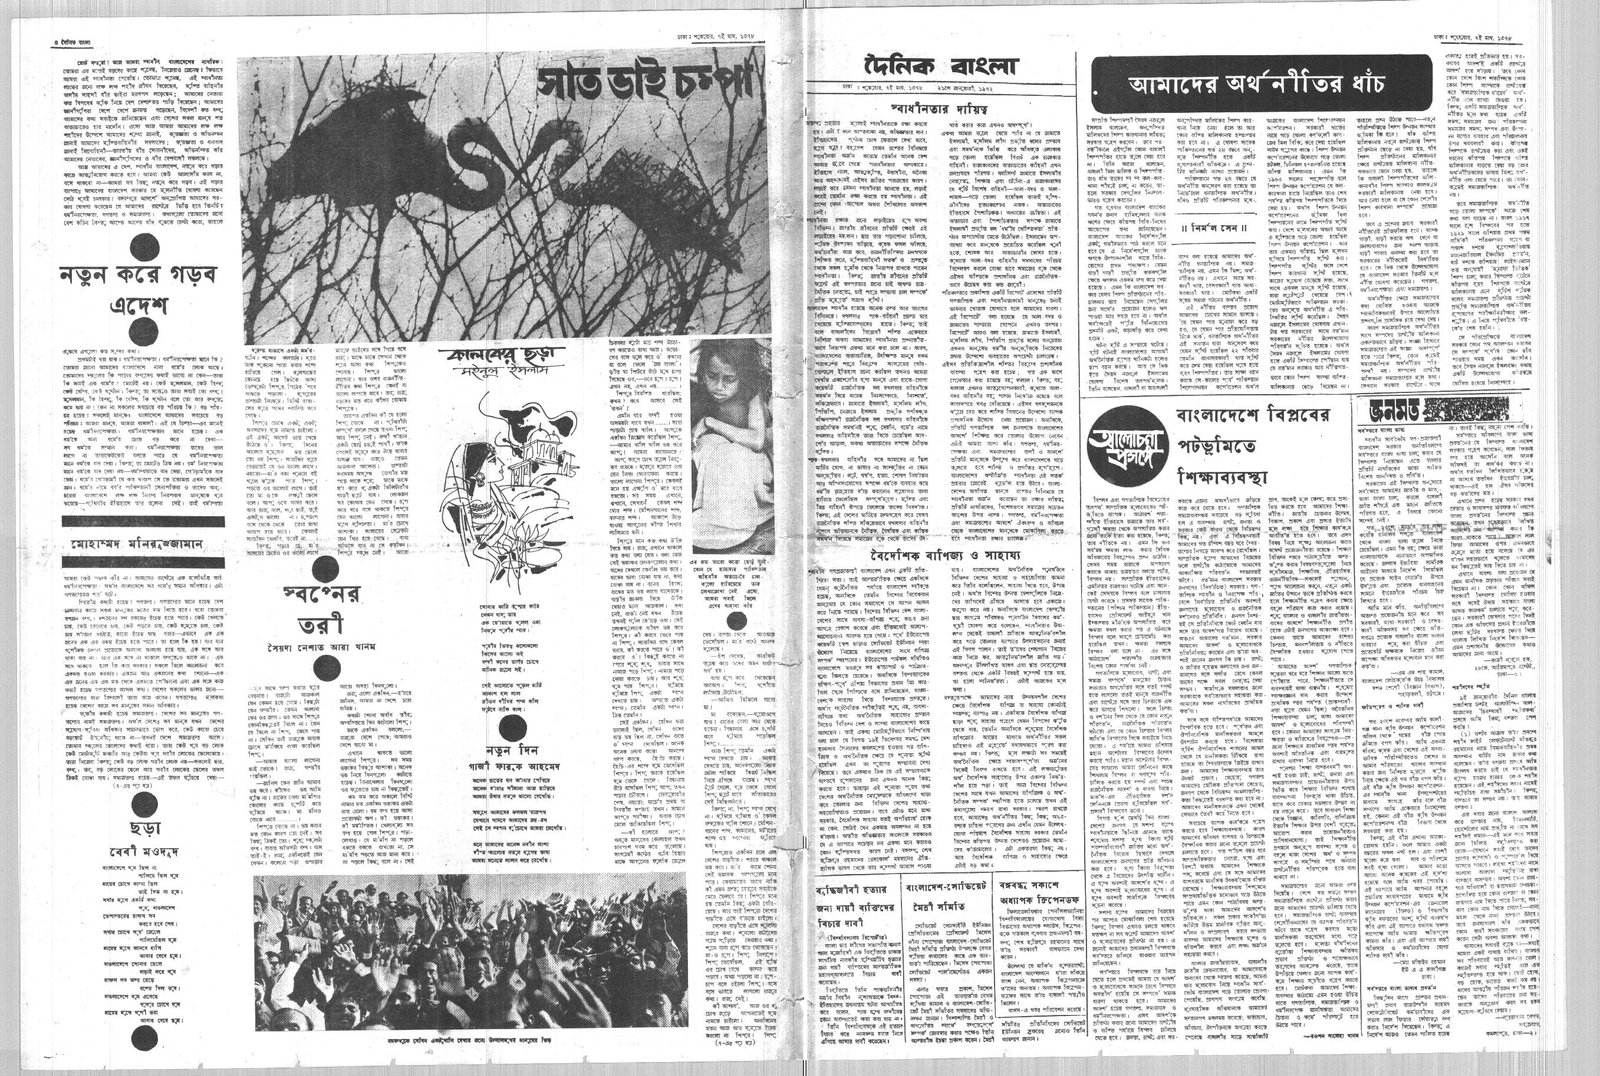 21JAN1972-DAINIK BANGLA-Regular-Page 4 and 5